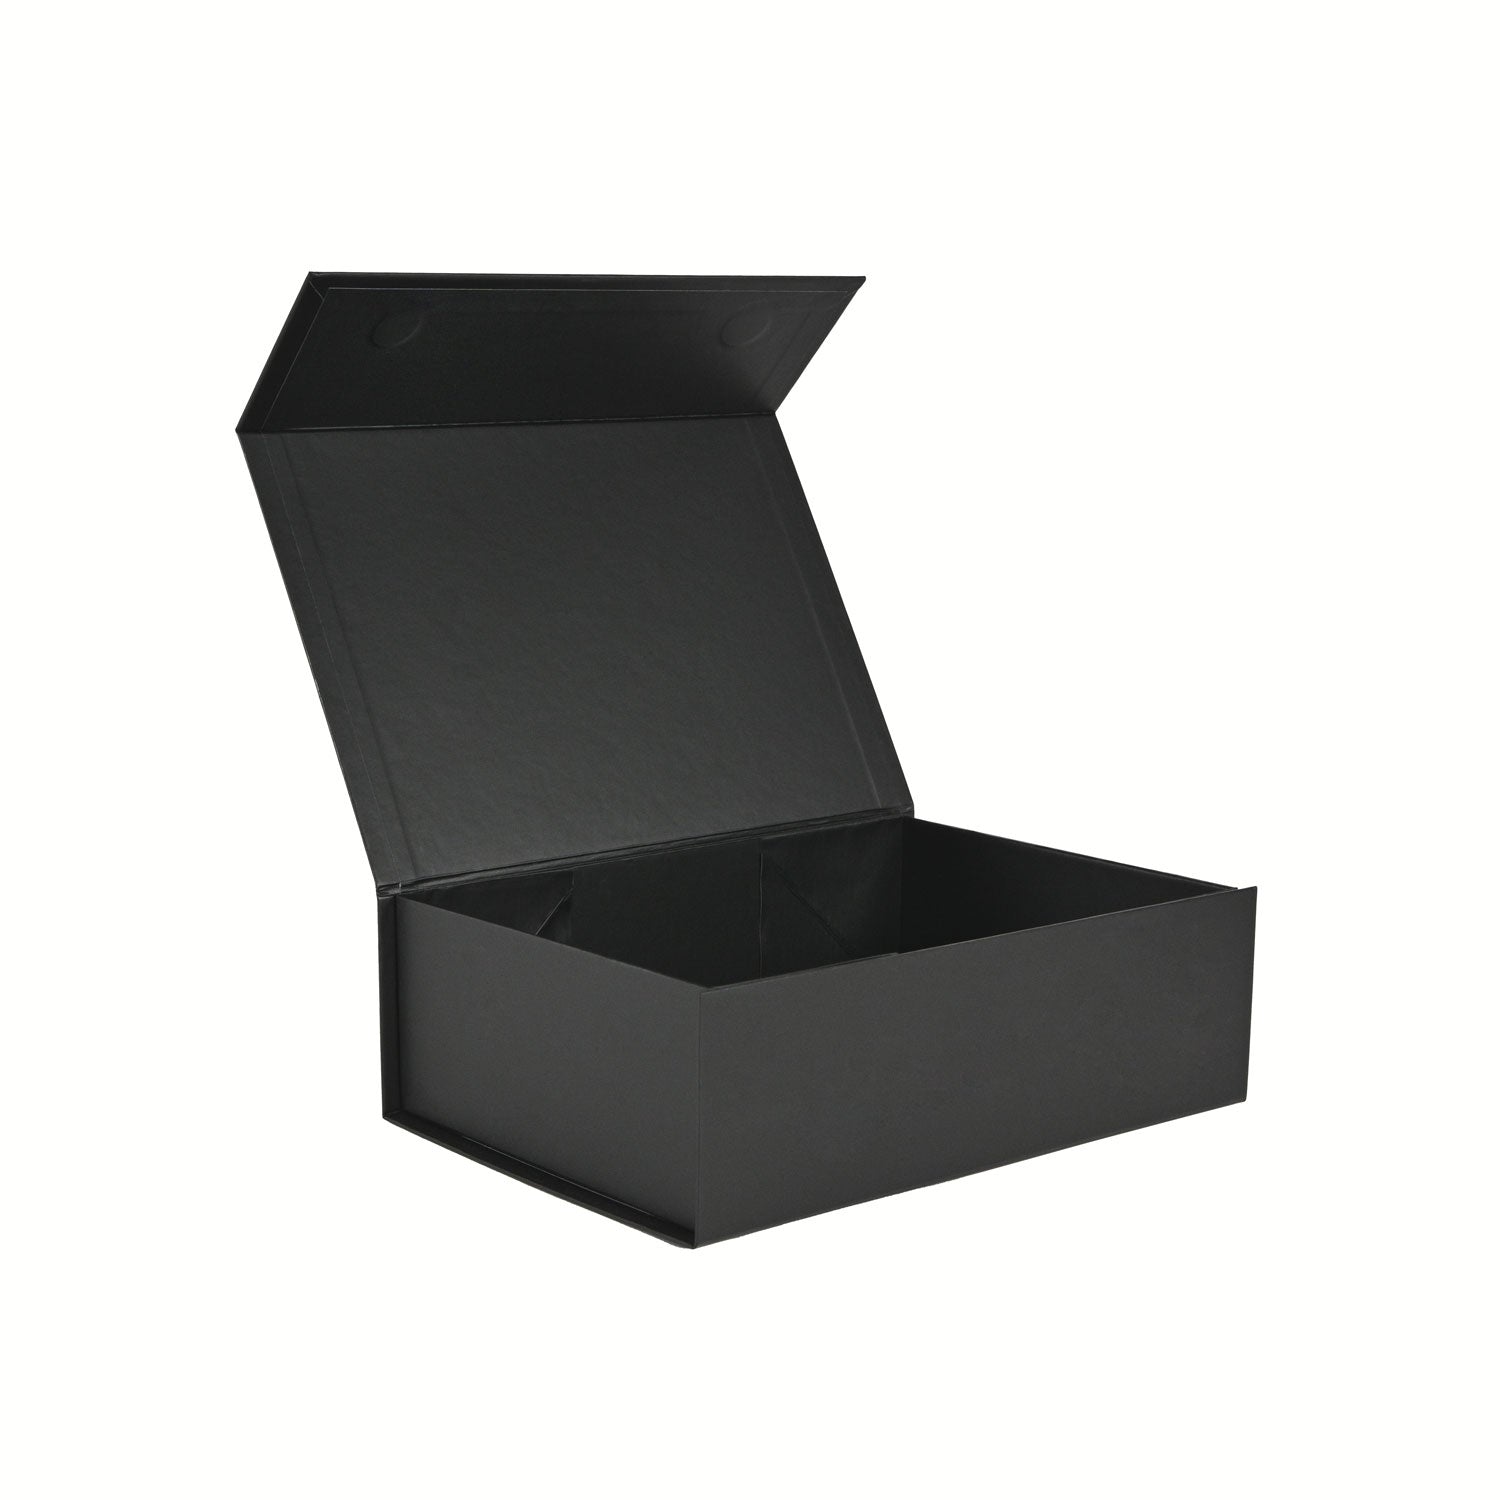 B6 White Magnetic Gift Box - Geotobox